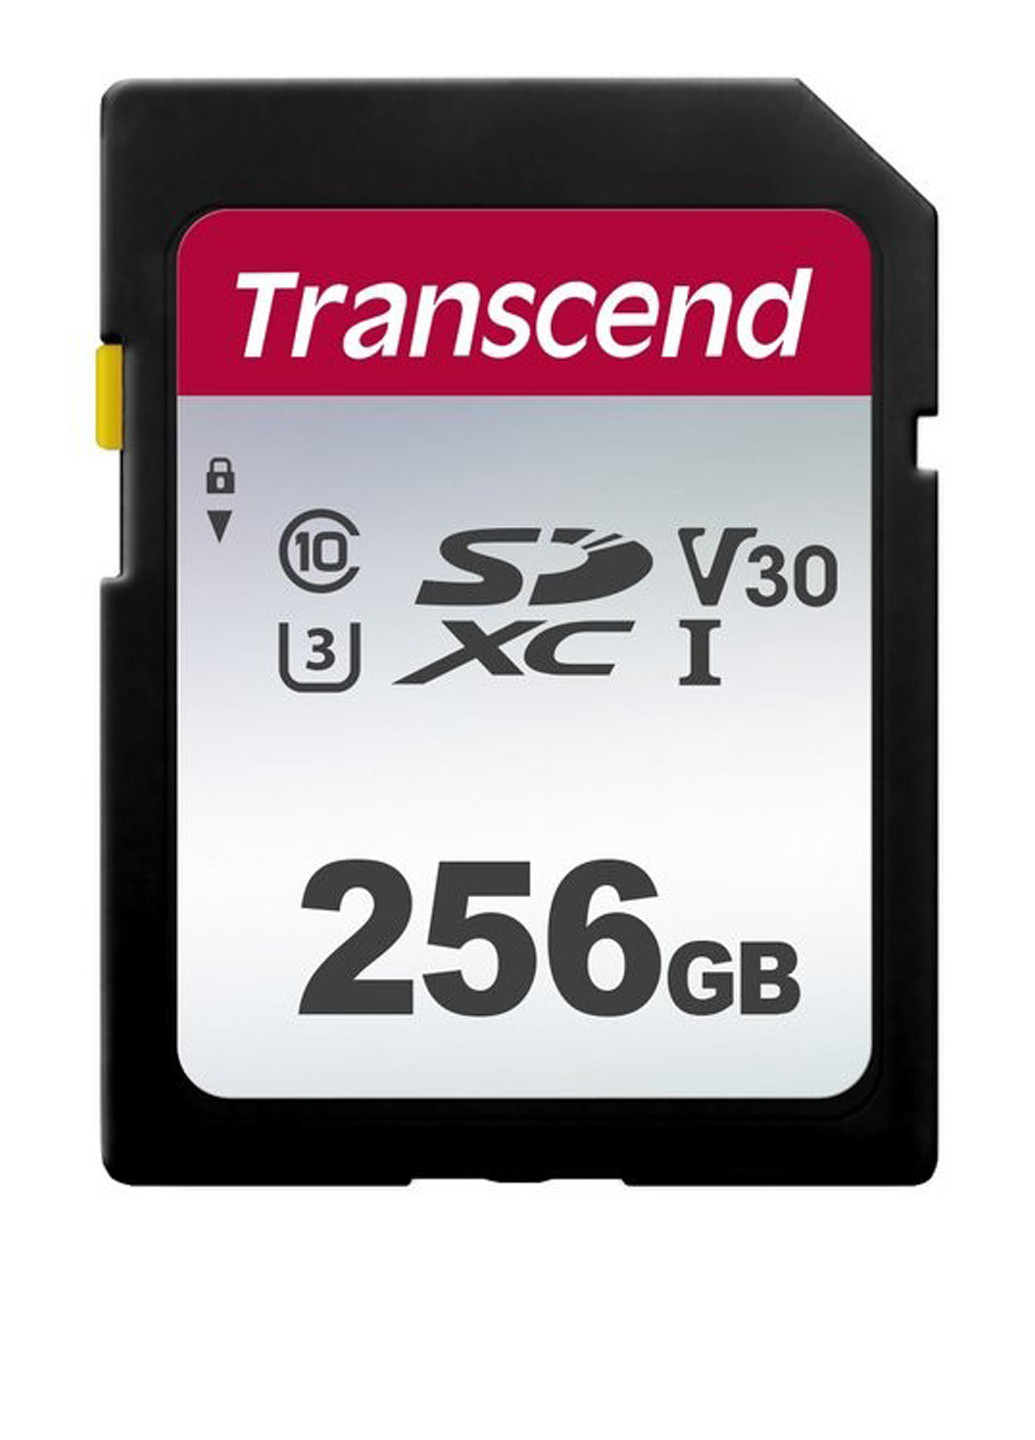 Карта памяти SDXC 256GB C10 UHS-I (R95/W45MB/s) (TS256GSDC300S) Transcend карта памяти transcend sdxc 256gb c10 uhs-i (r95/w45mb/s) (ts256gsdc300s) (135316905)